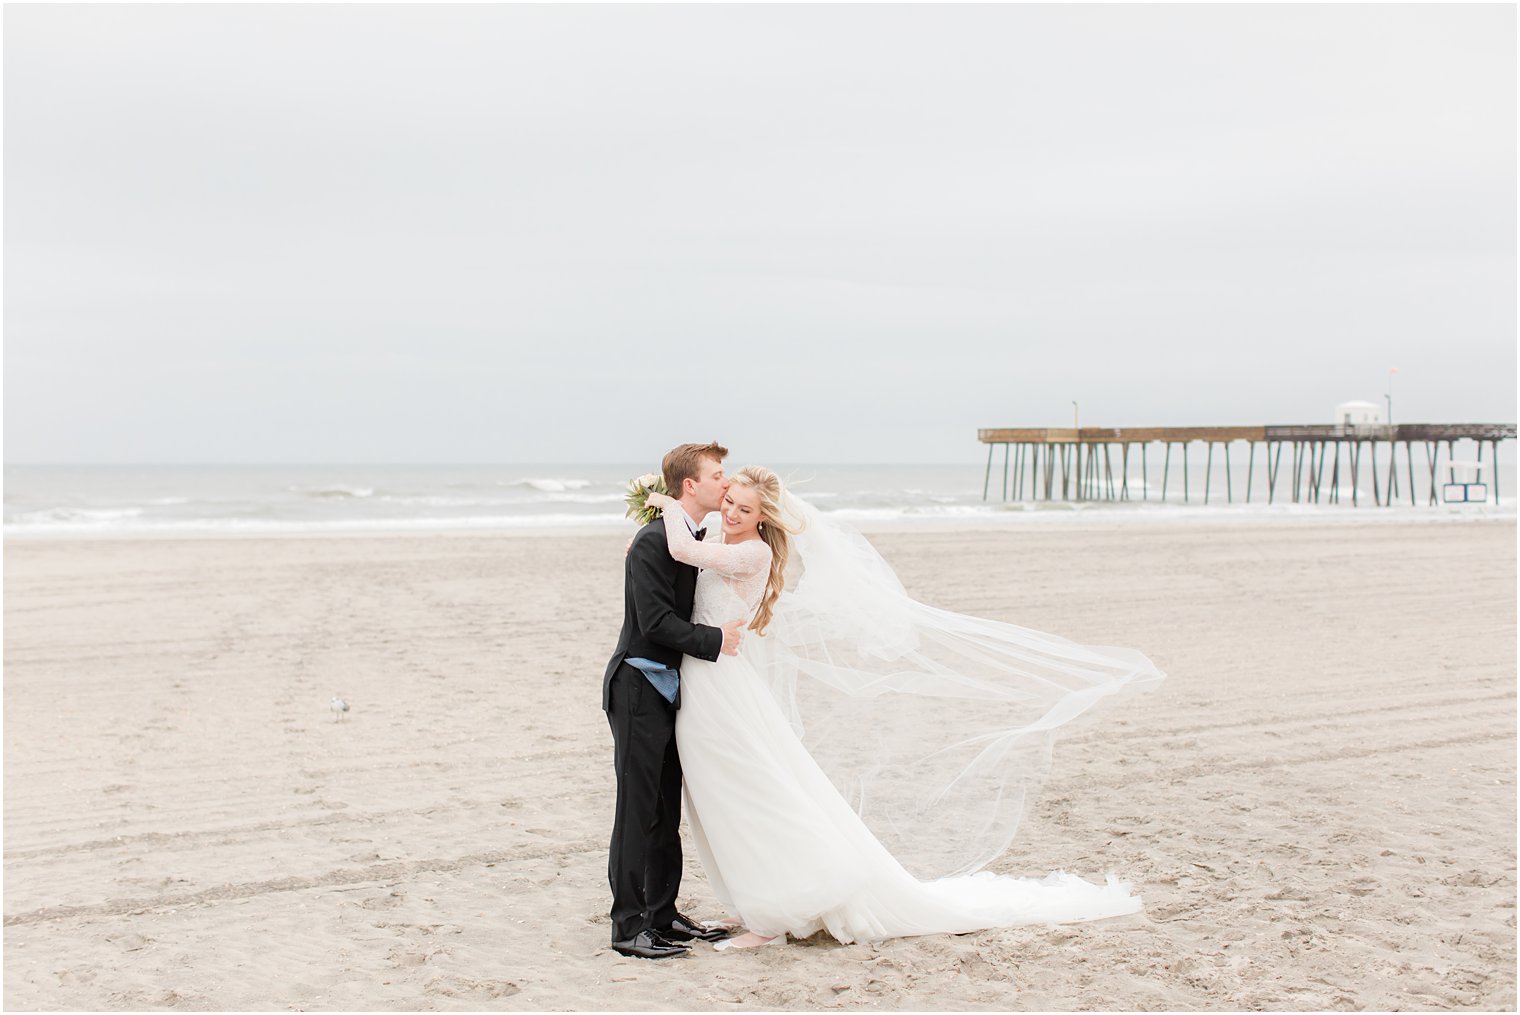 groom kisses bride's cheek during beach wedding photos